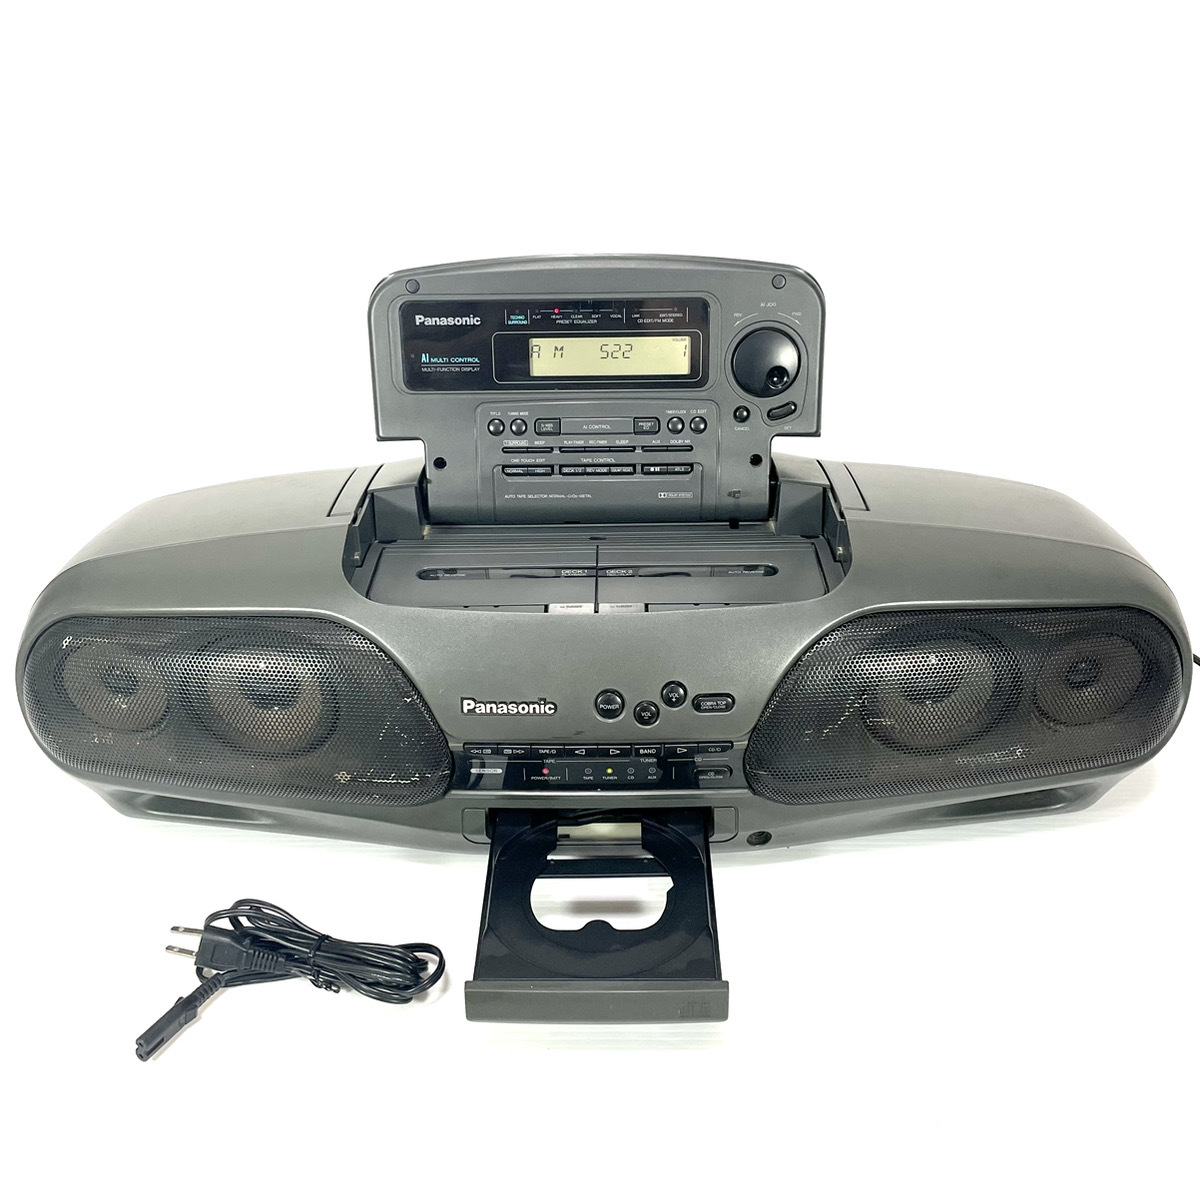 【稀少銘機/動作美品】Panasonic パナソニック RX-DT707 バブルラジカセ コブラトップ CD TAPE AM FM RX-DT909 の兄弟機の画像1